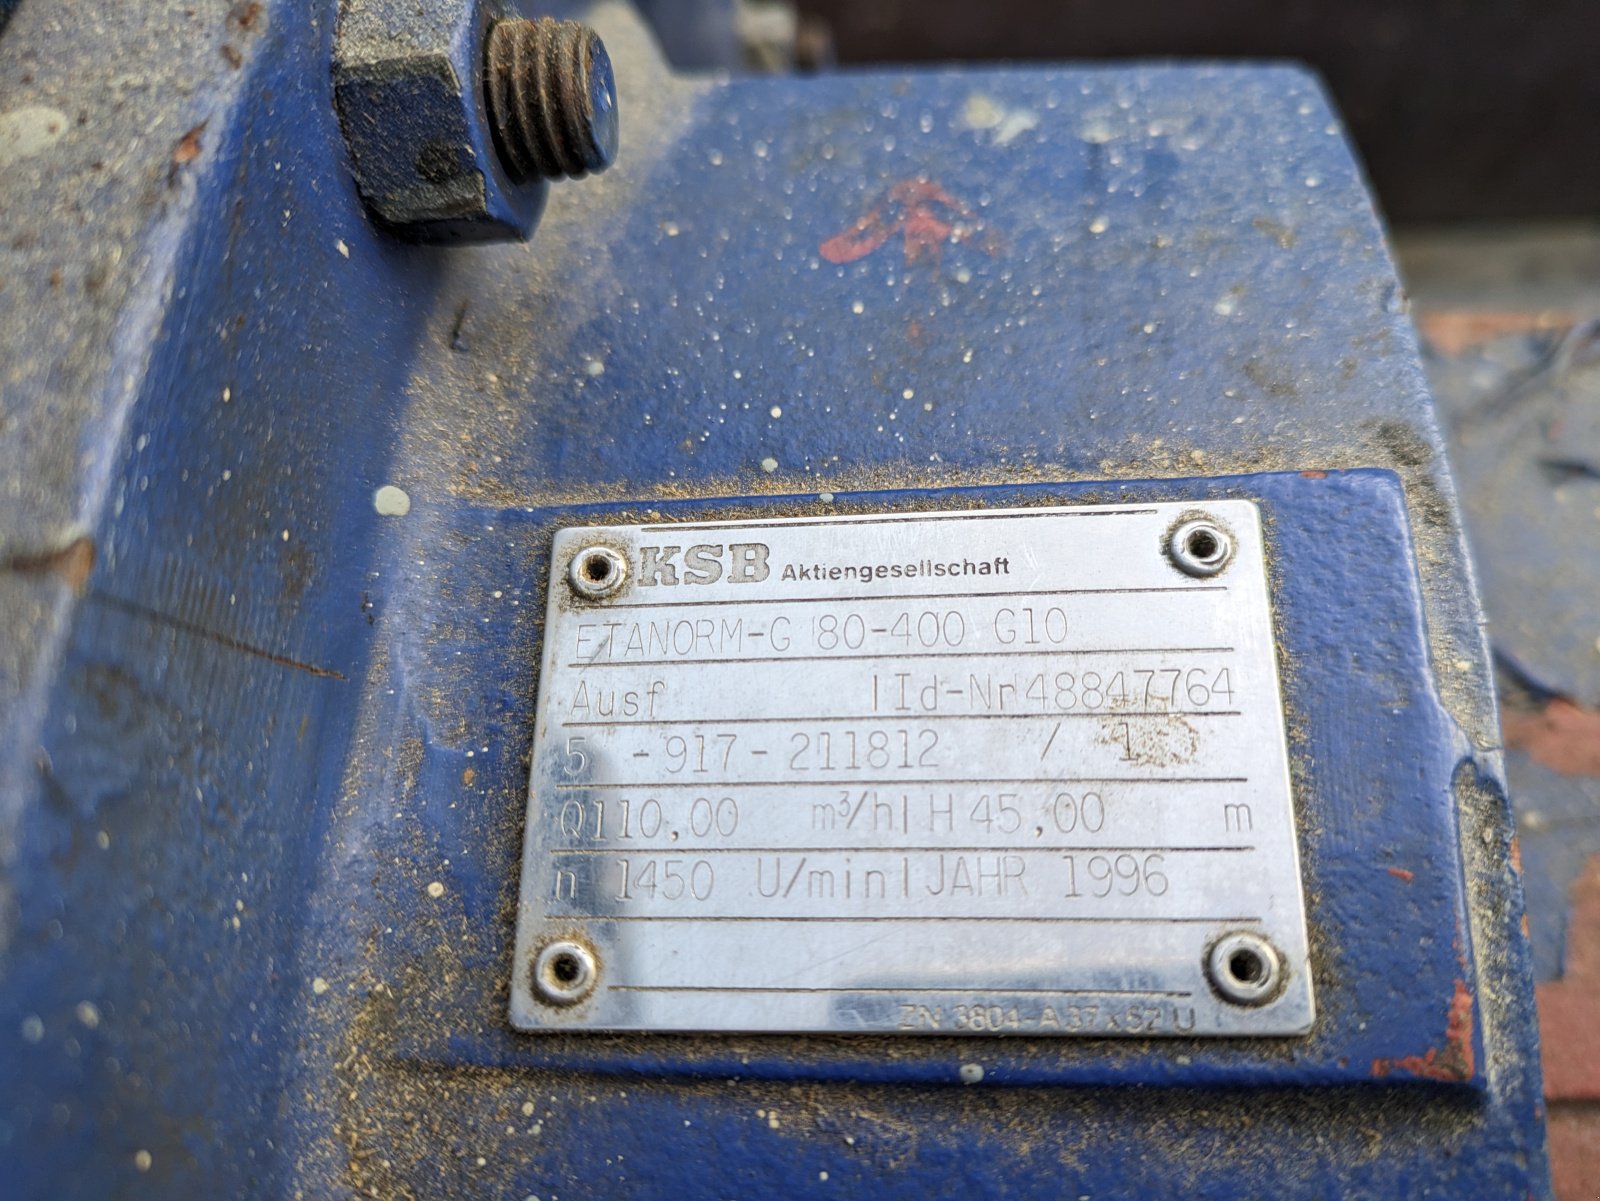 Beregnungspumpe des Typs KSB ETANORM, Gebrauchtmaschine in Pilsting (Bild 2)